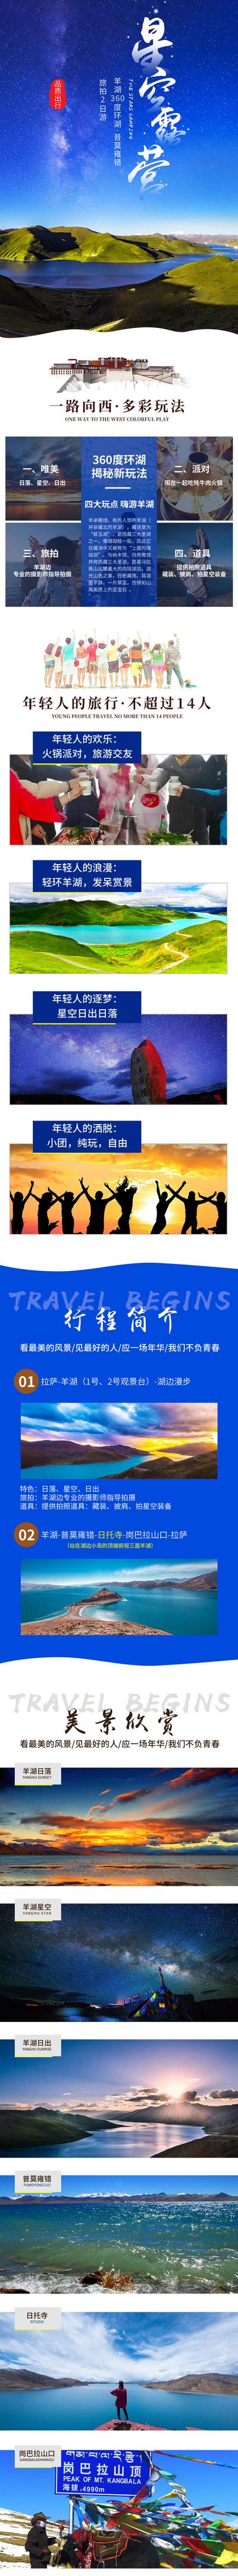 南门网 西藏环湖朝圣之旅旅游电商详情页